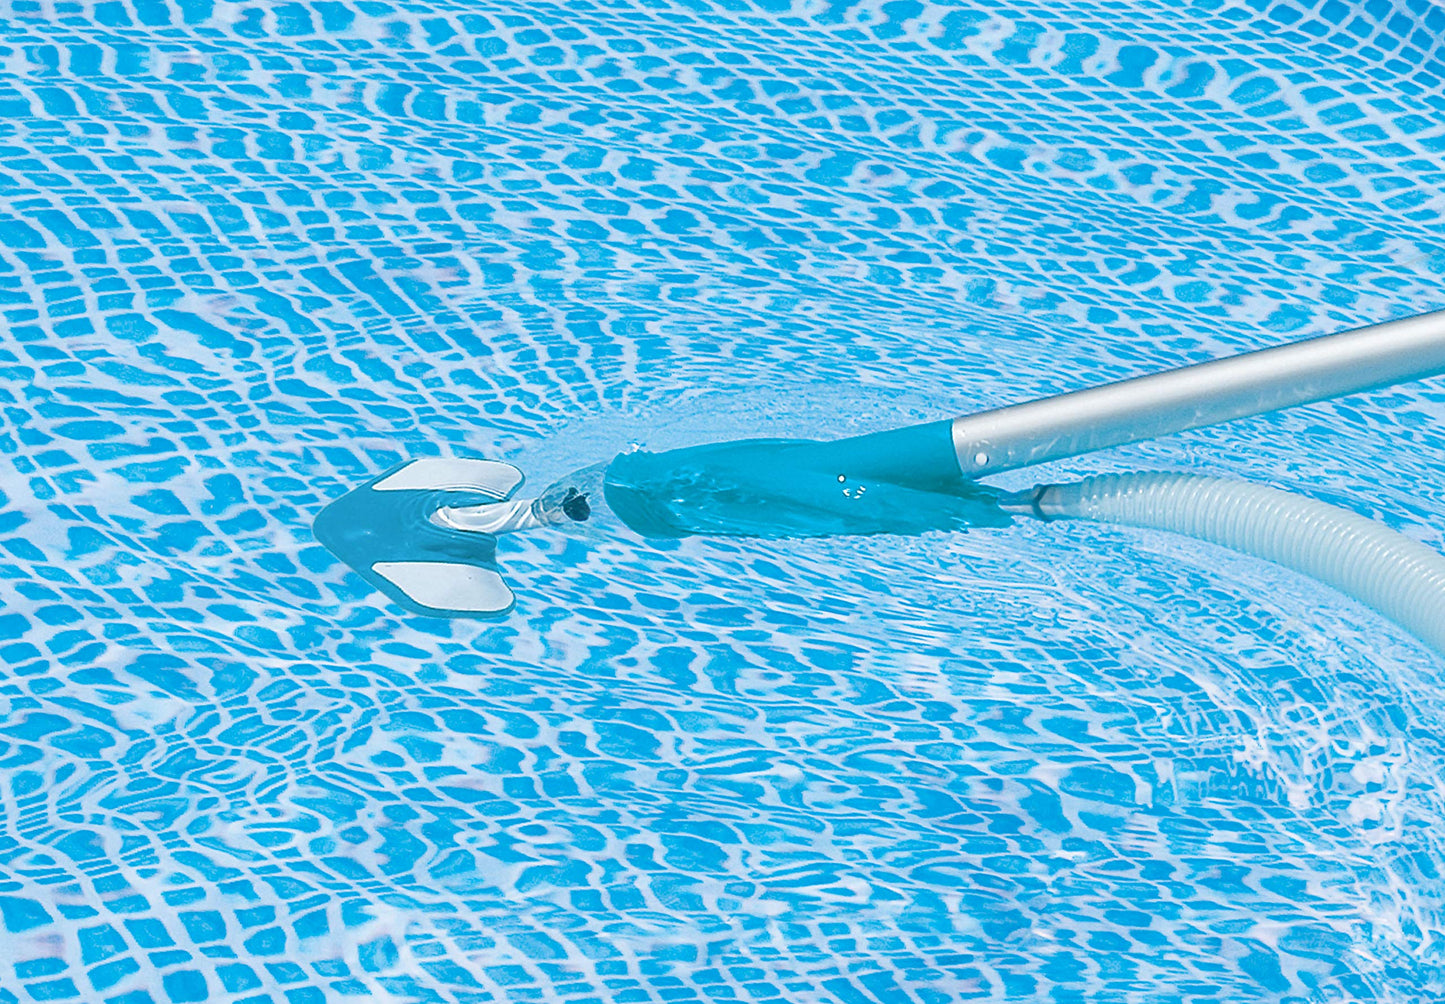 Intex 28003E Kit d'entretien de piscine de luxe pour piscines hors sol